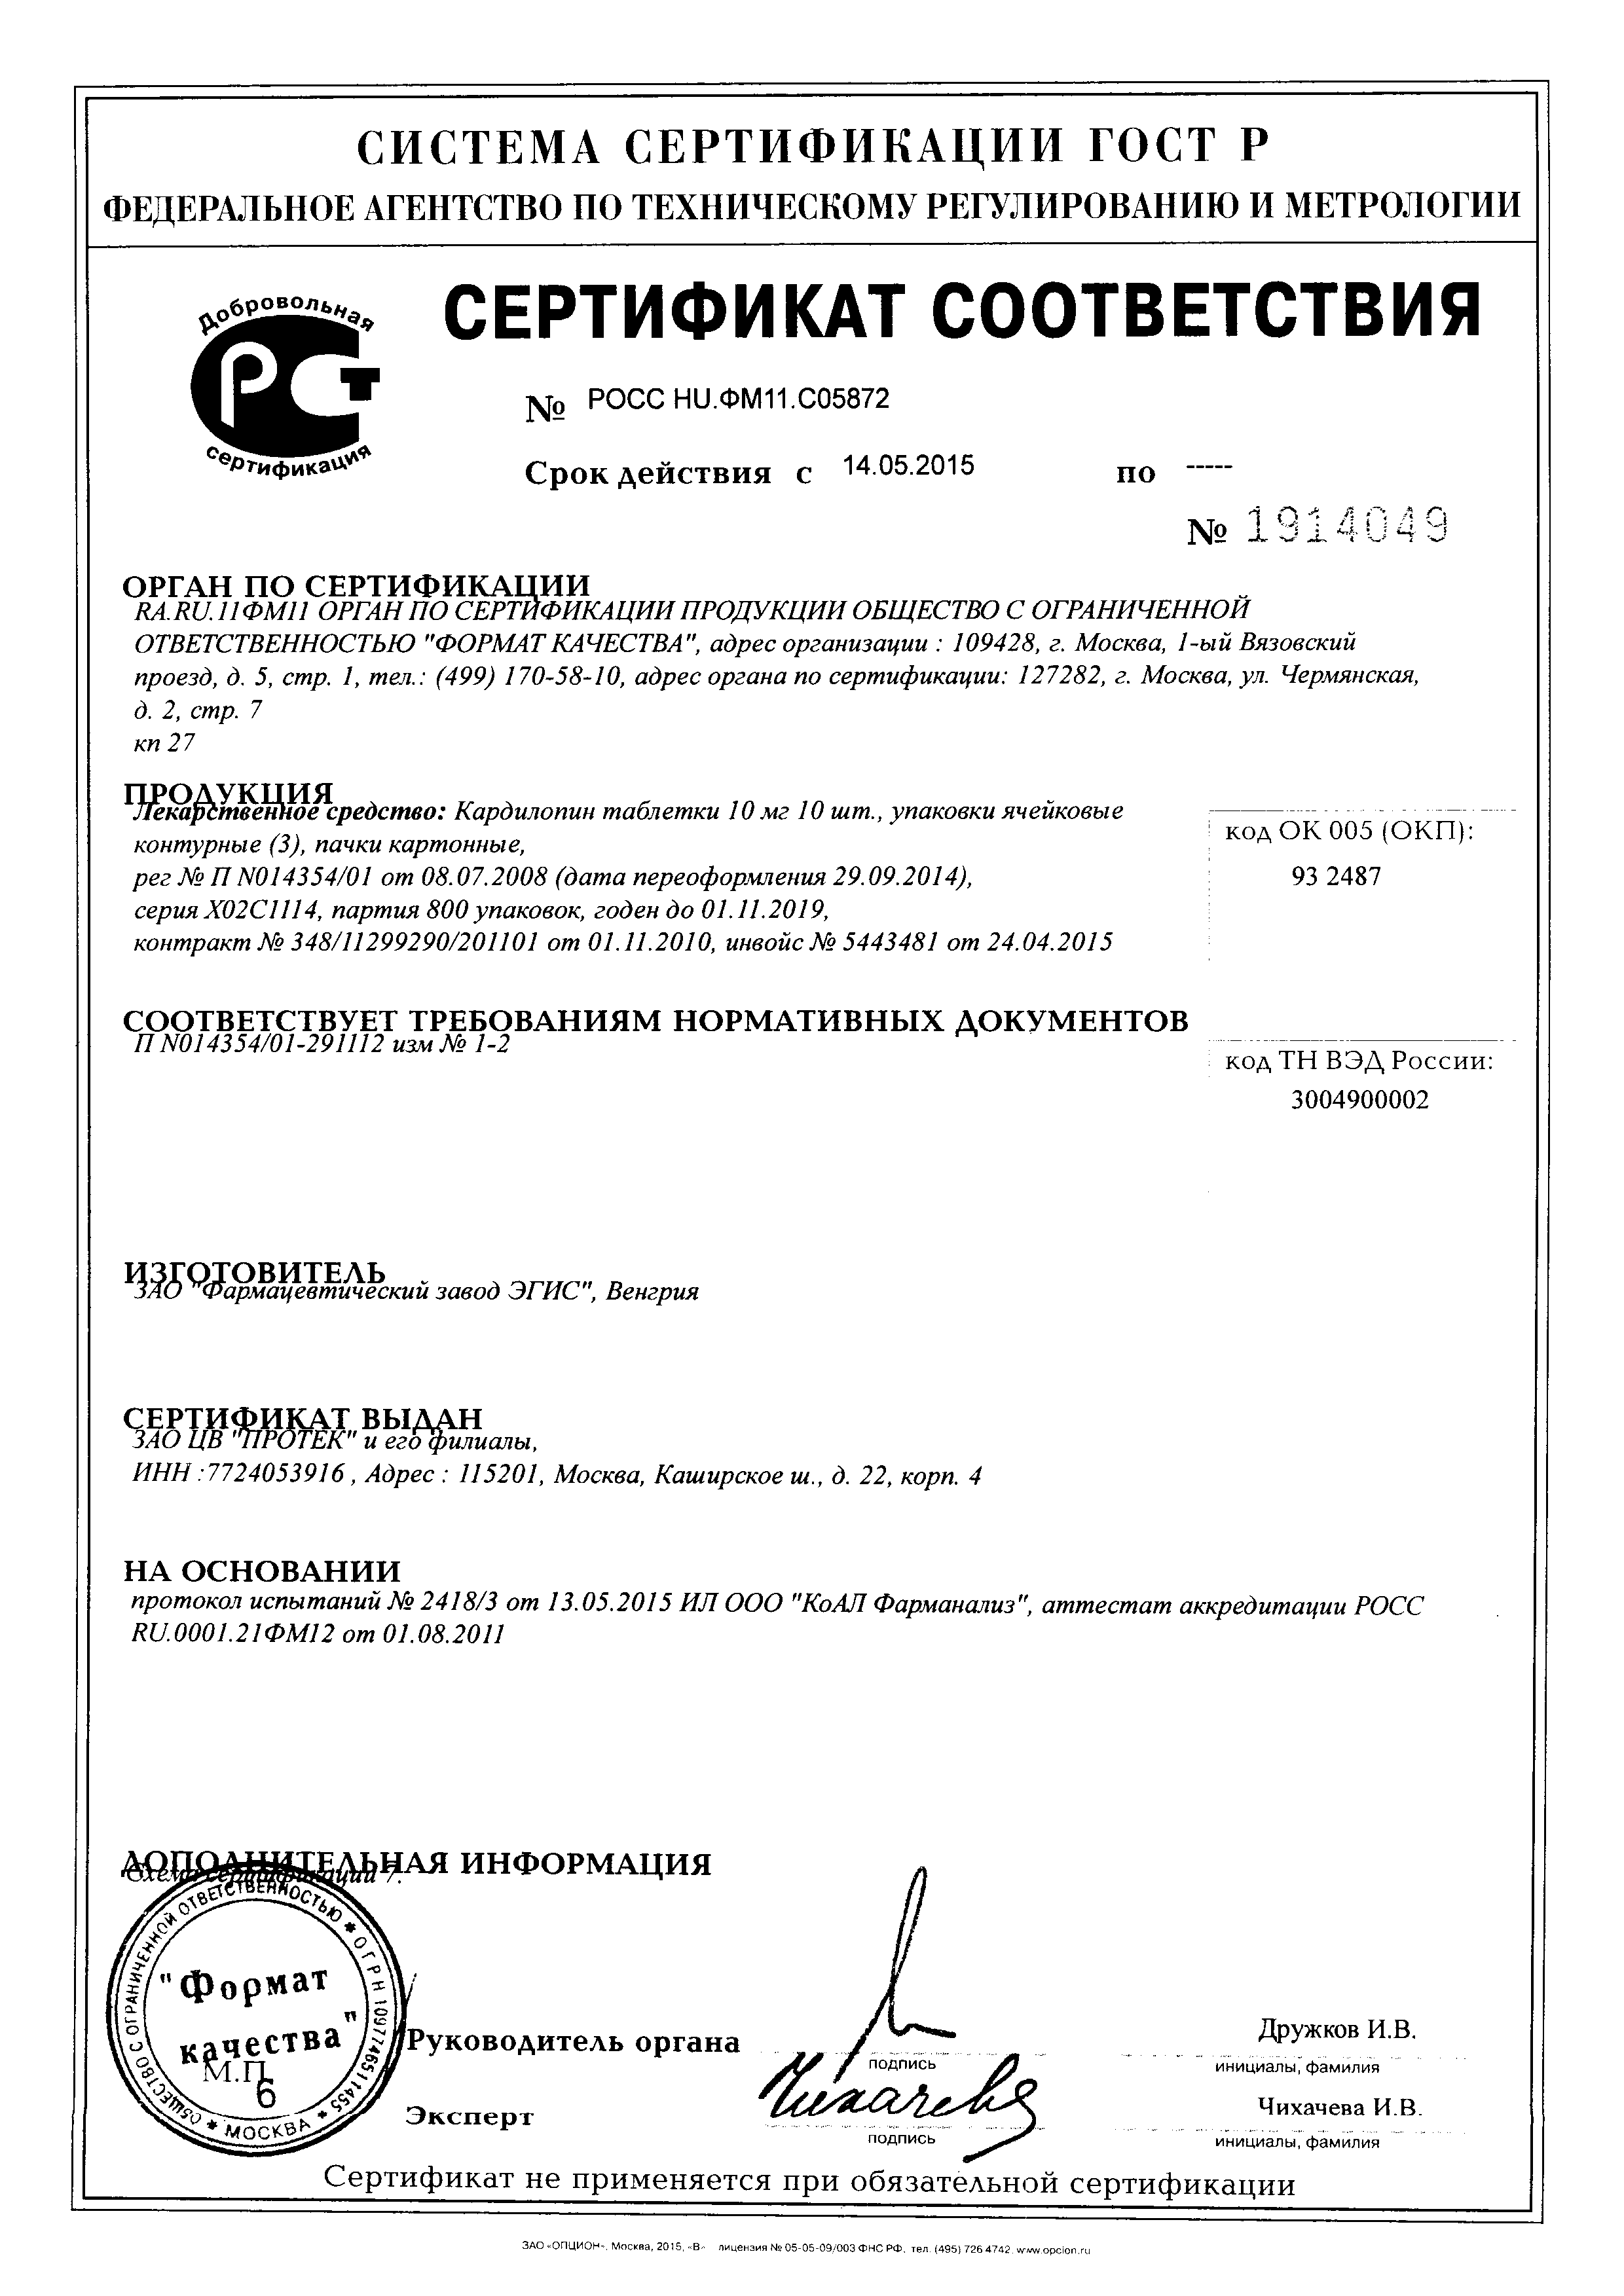 Кардилопин сертификат